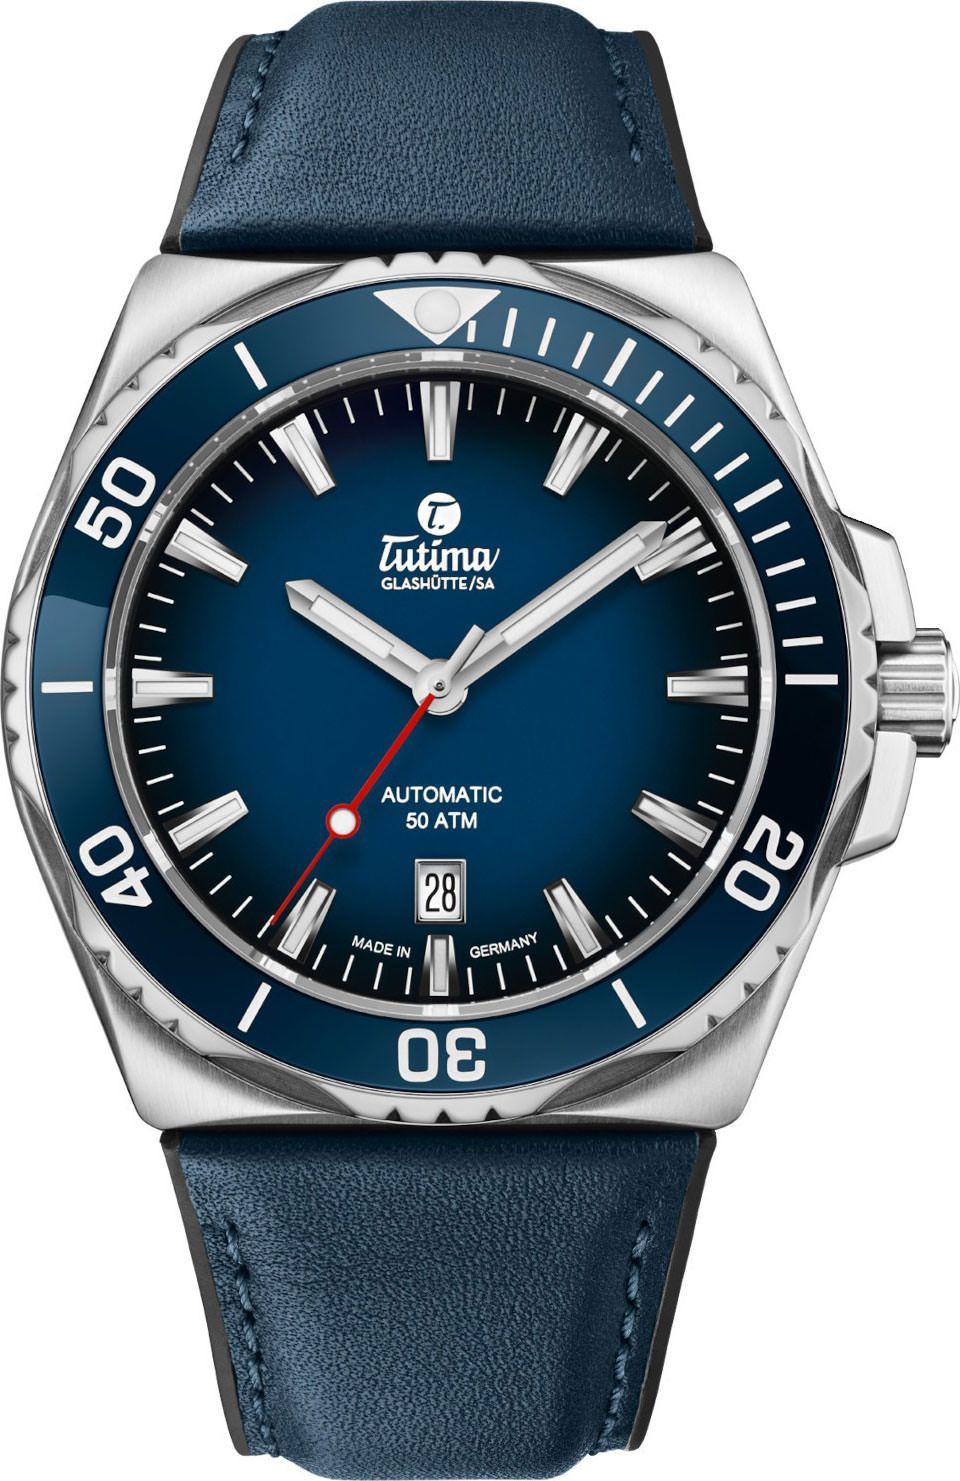 Tutima Glashütte Seven Seas S 44 mm Watch in Blue Dial For Men - 1